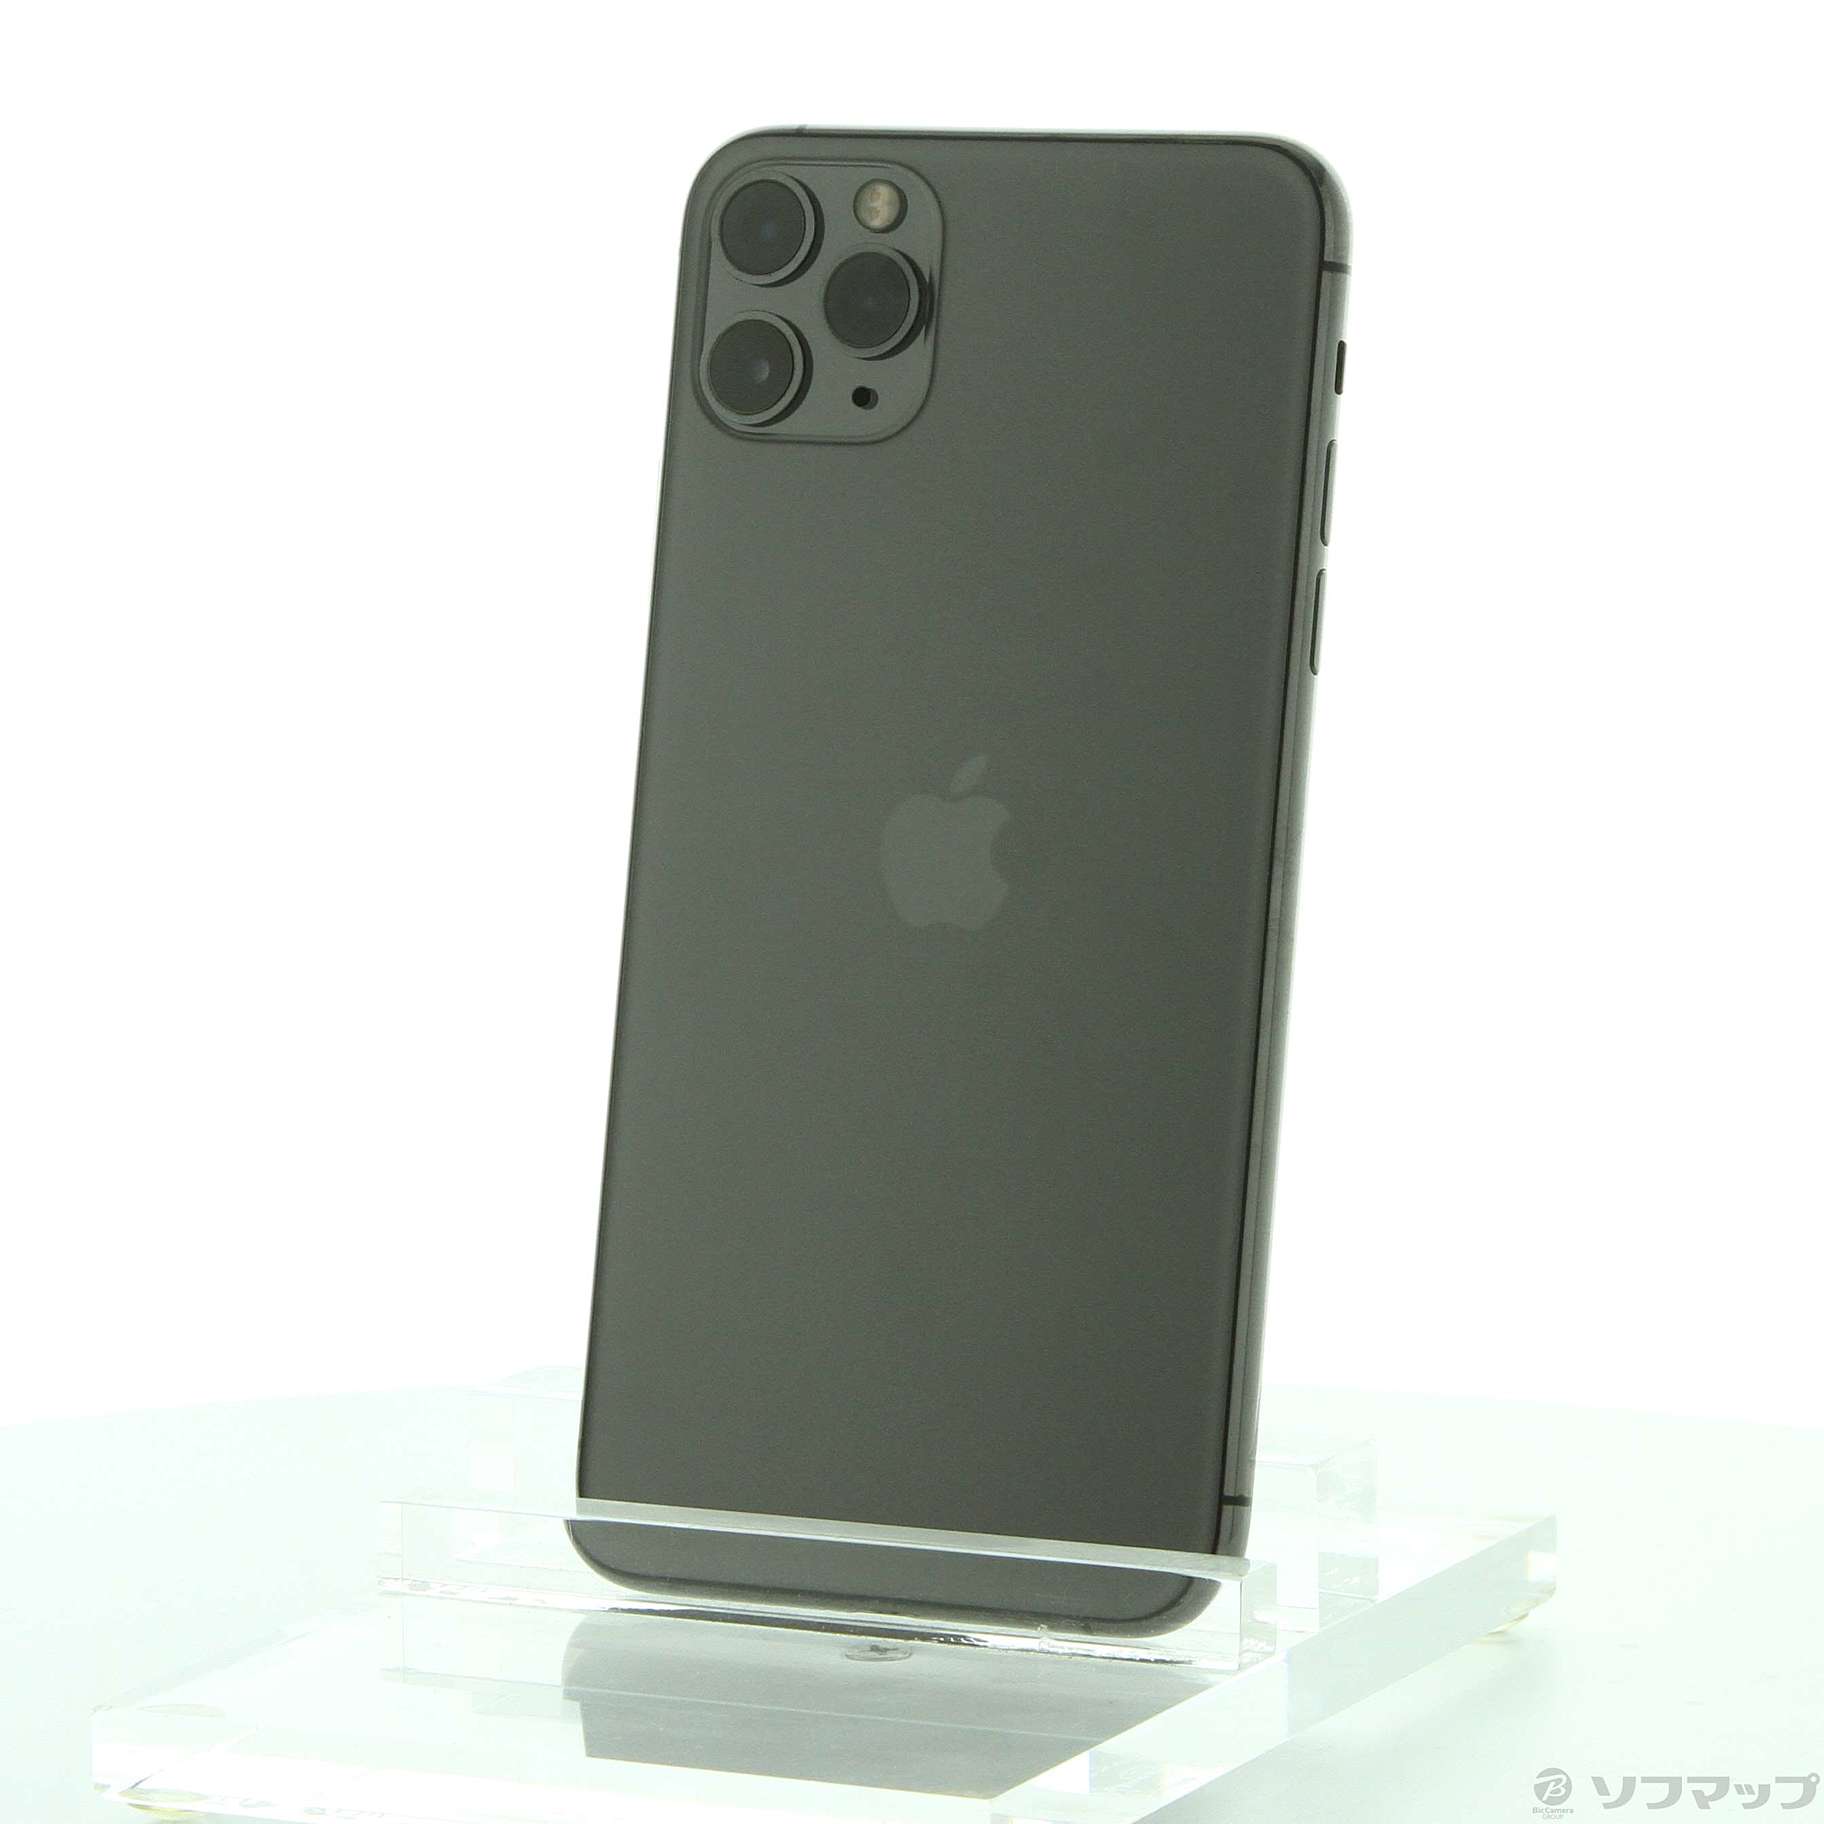 (中古)Apple iPhone11 Pro Max 256GB スペースグレイ MWHJ2J/A SIMフリー(276-ud)